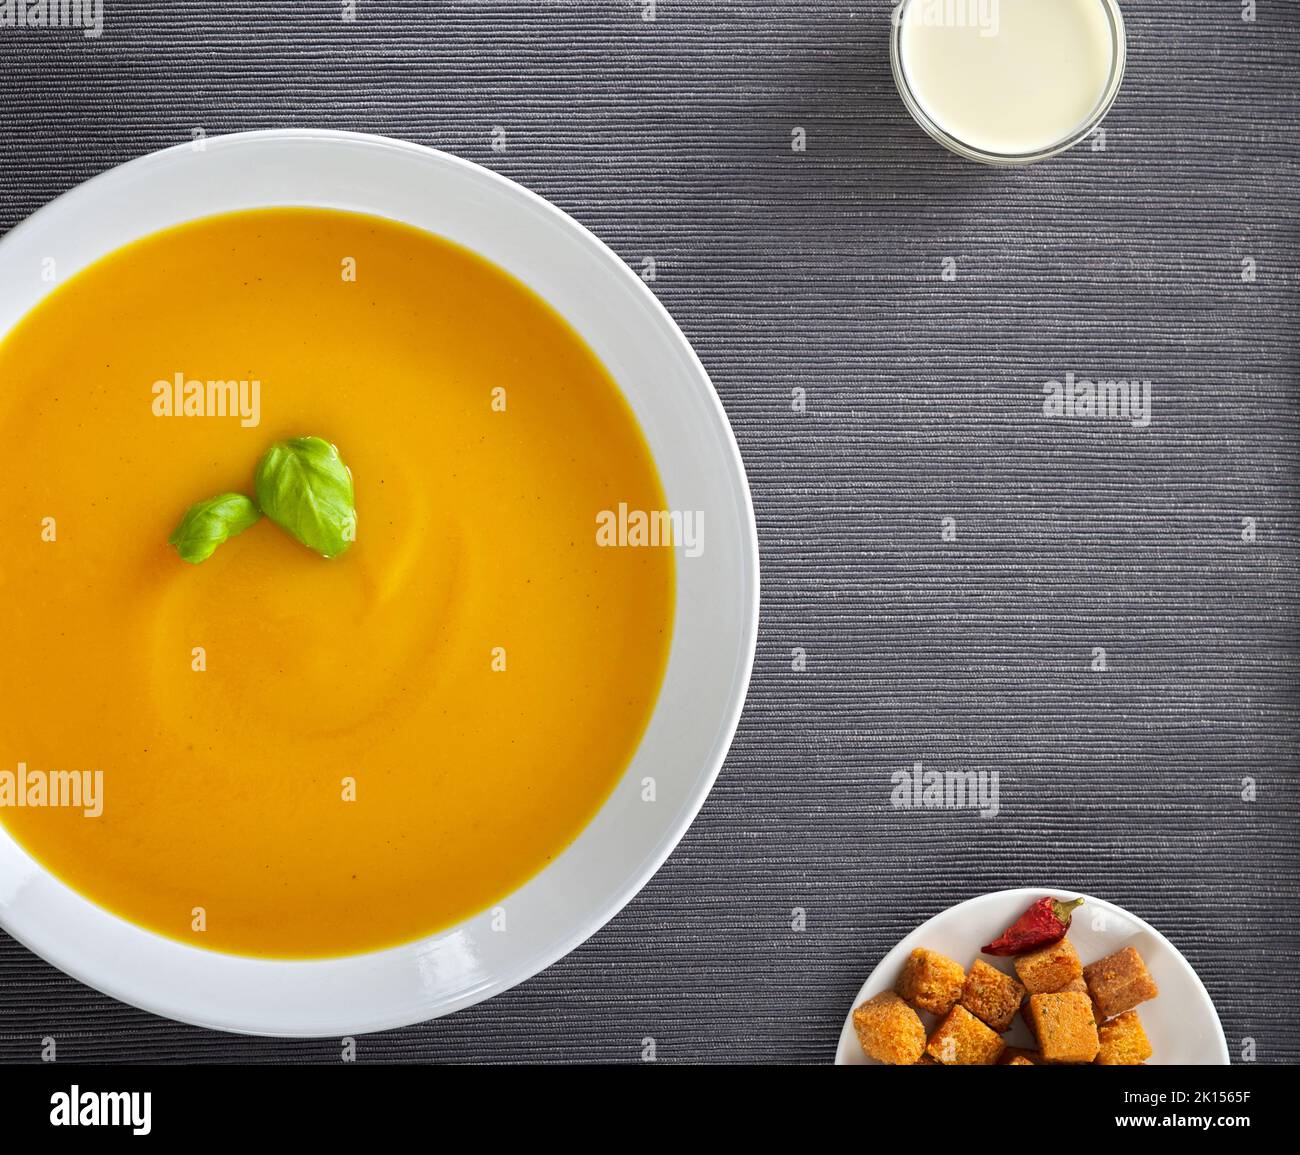 Kürbis traditionelle Suppe mit Croutons und saurer Rahm. Grauer Teppich-Hintergrund. Speicherplatz kopieren. Draufsicht. Stockfoto